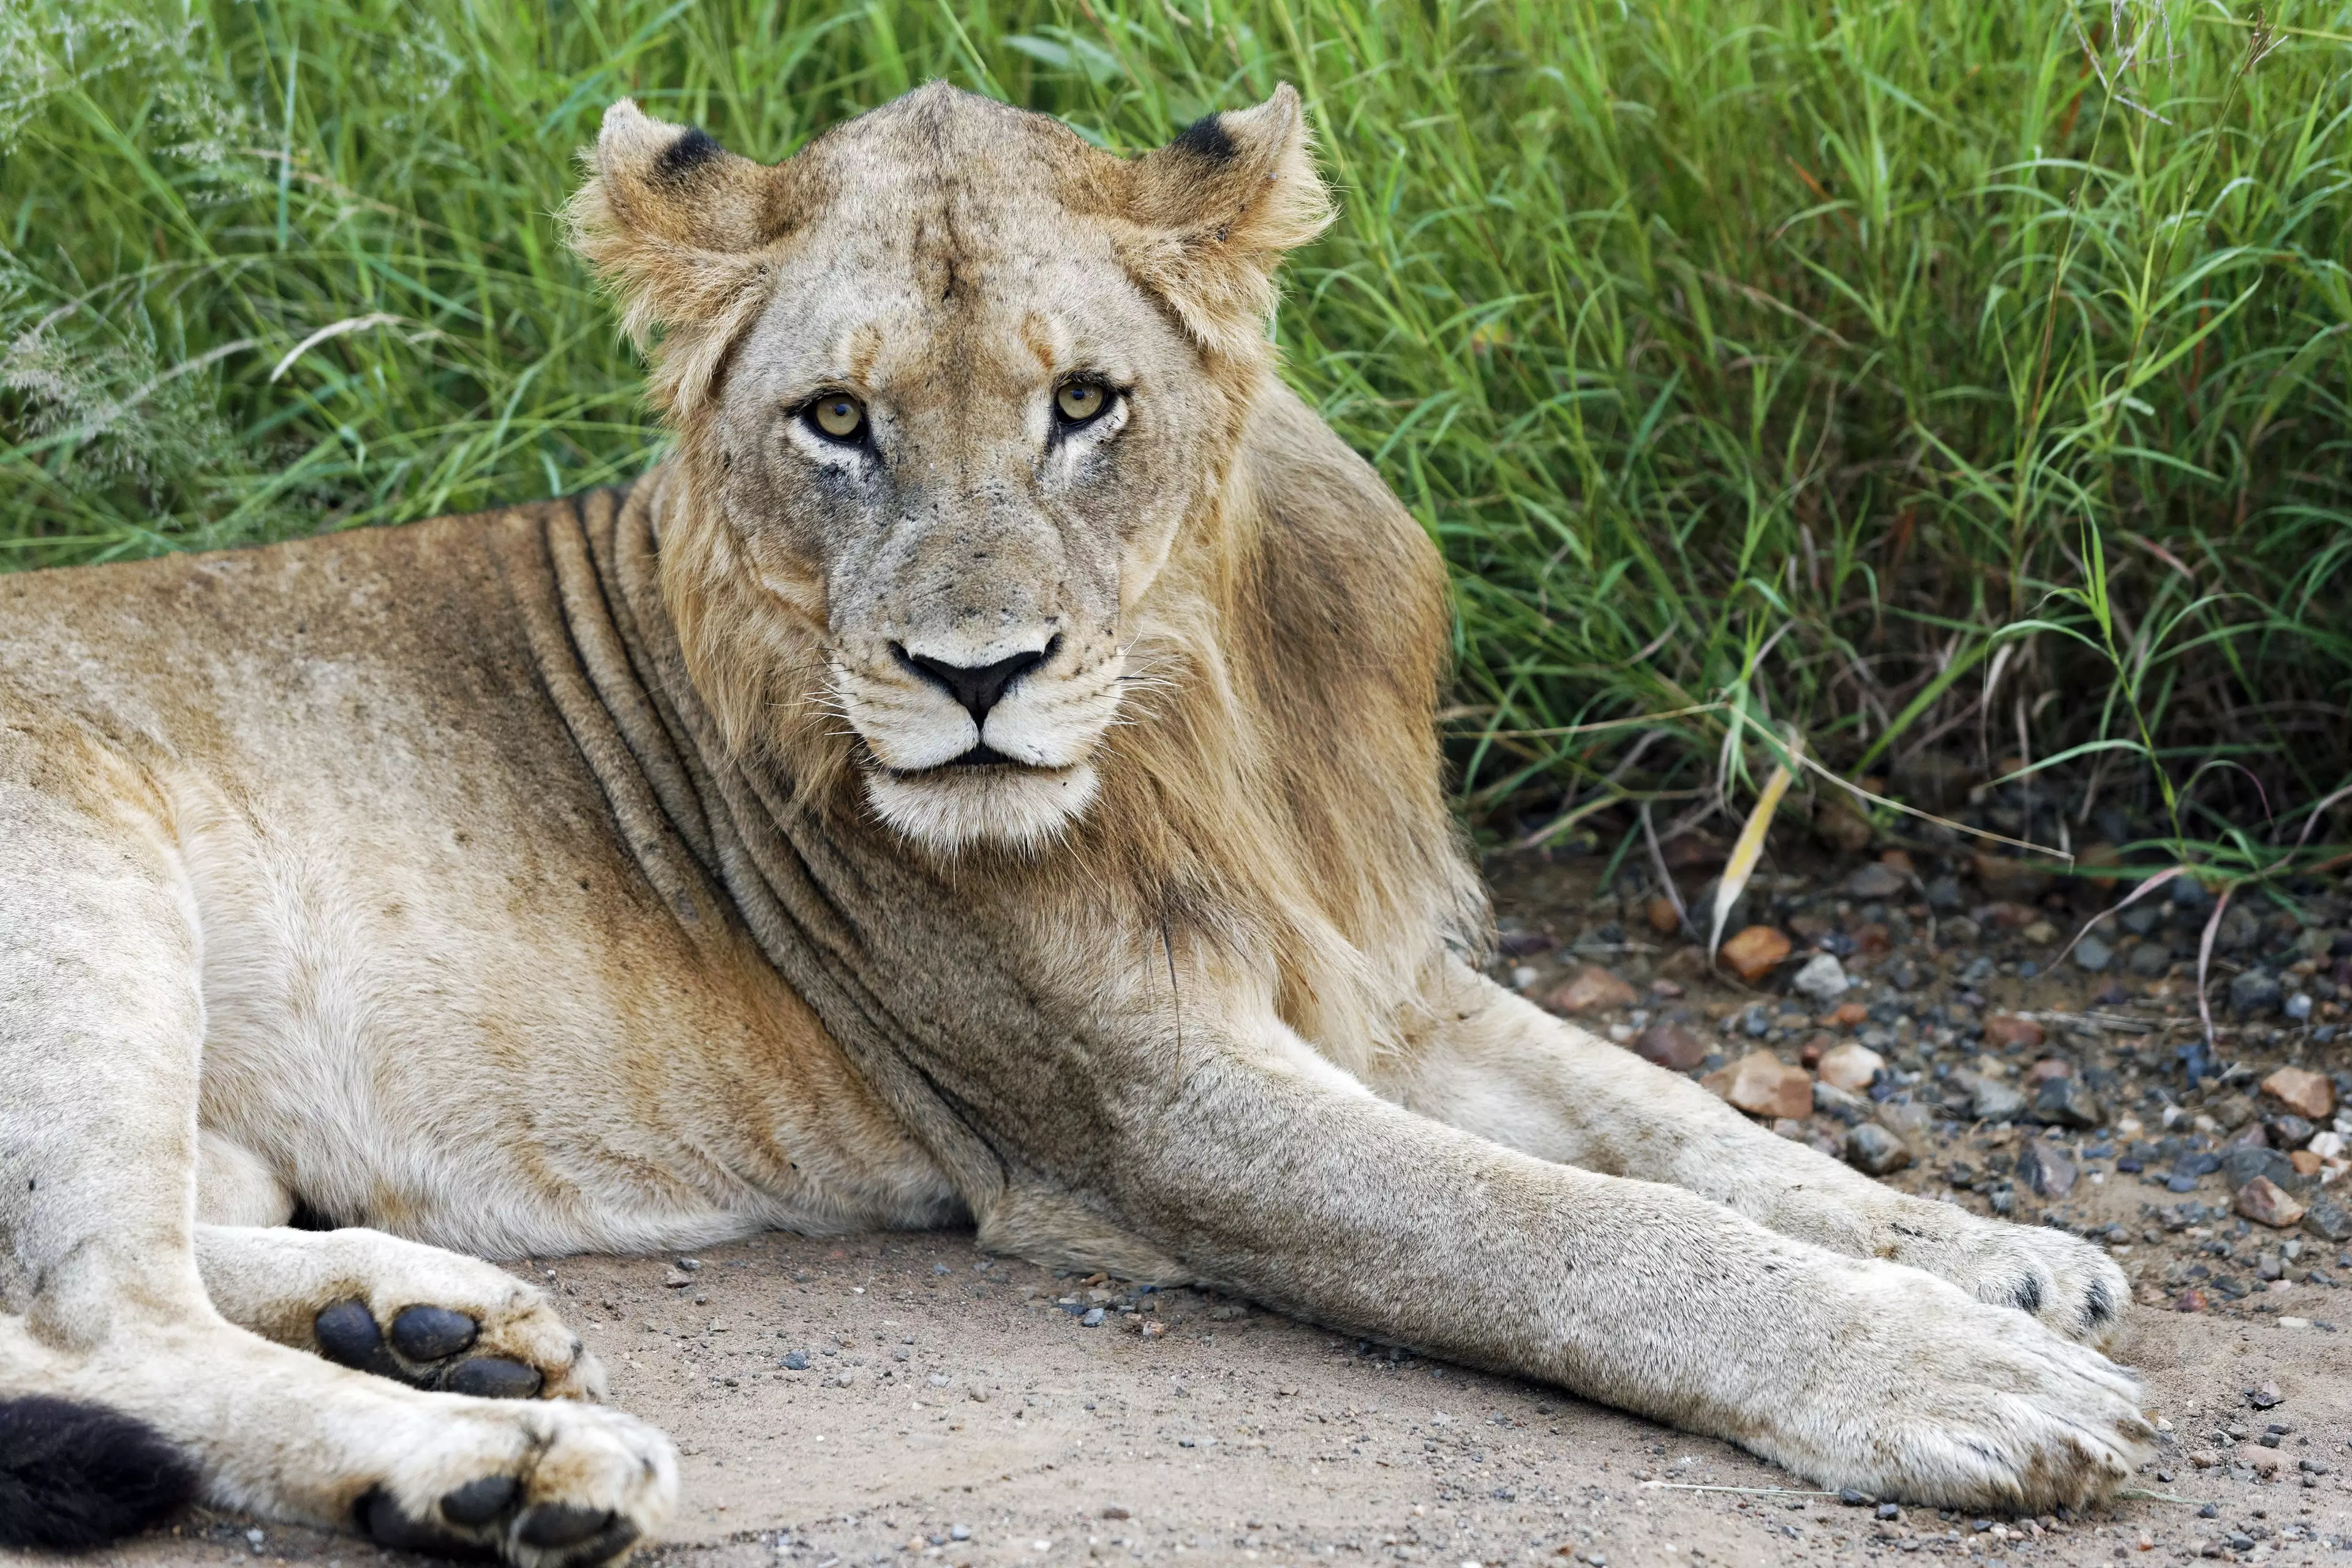 Lion in Kruger National Park.